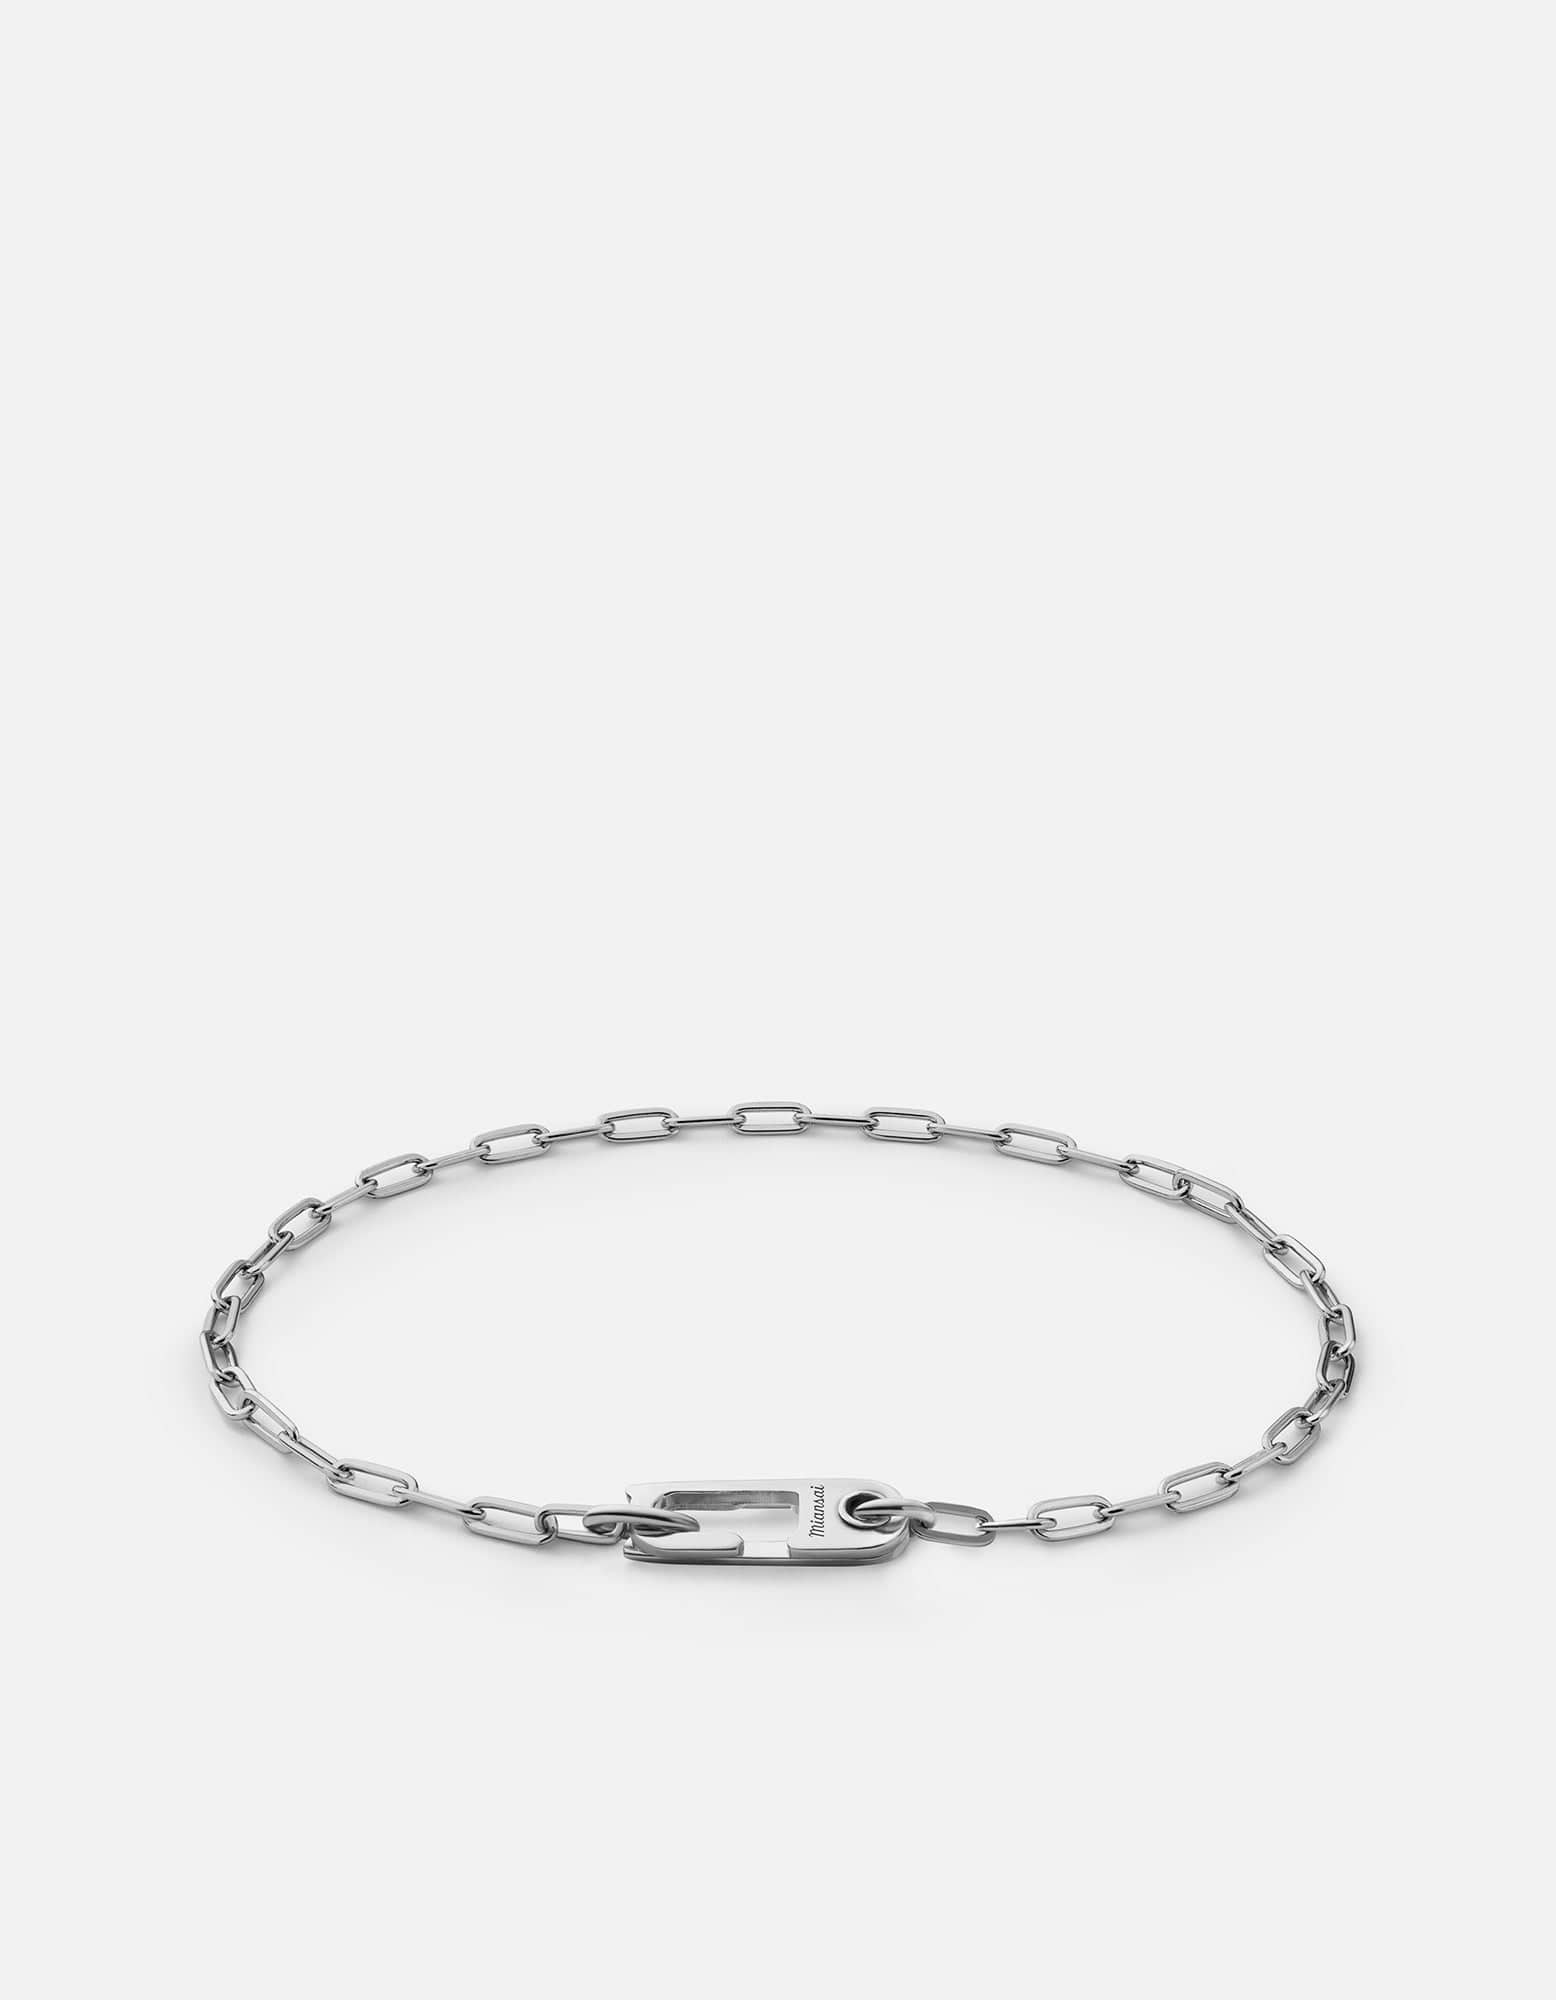 Annex Volt Link Bracelet, Sterling | | Bracelets Men\'s Silver Miansai